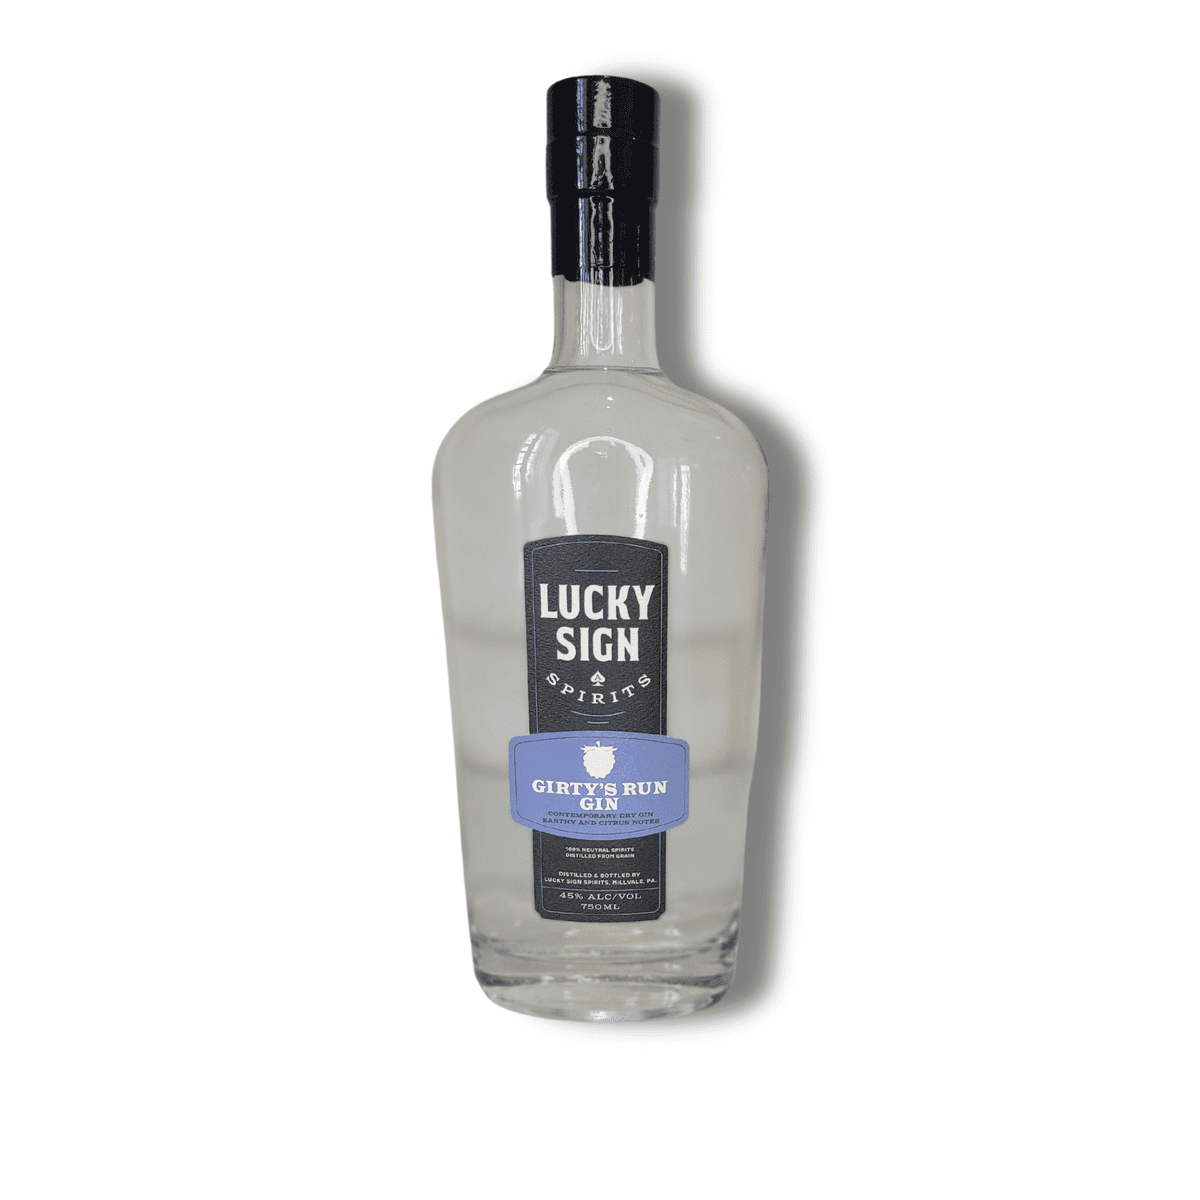 Lucky Sign - Girty's Run Gin - 750mL Bottle